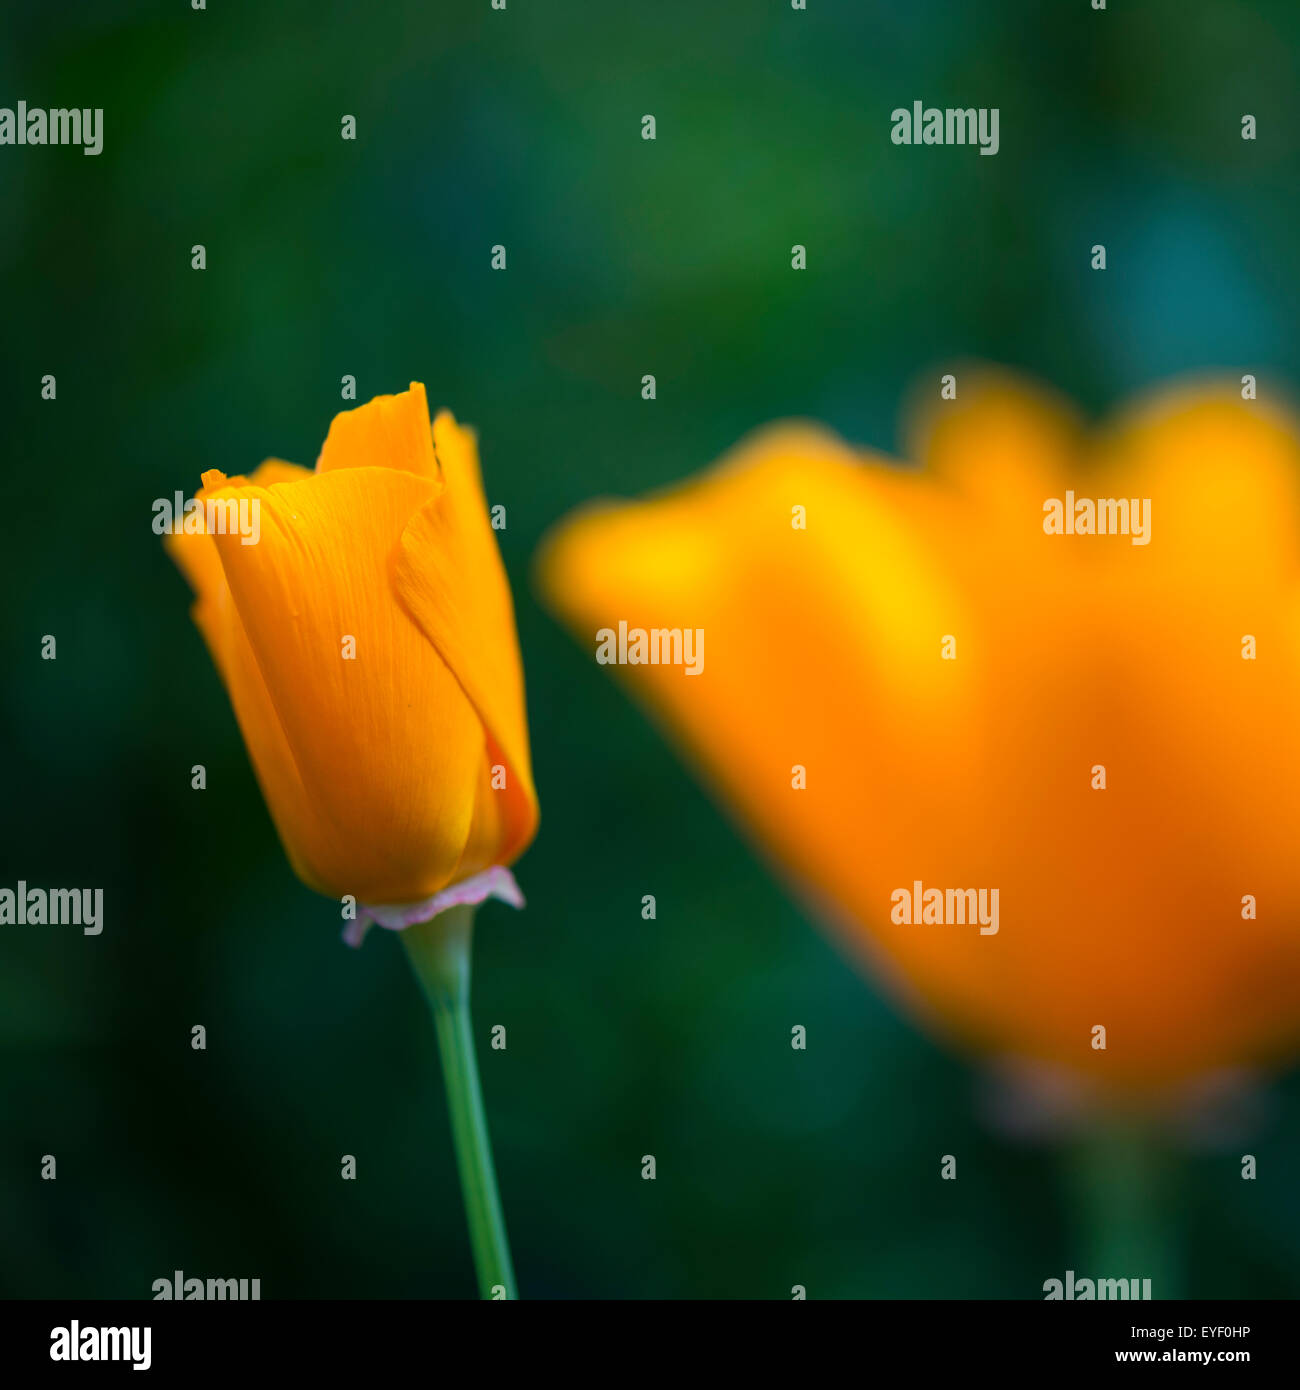 Abstraktes Bild von einer orange Blütenknospe eine kalifornische Mohn (Escholtzia) mit weichen grünen Hintergrund. Stockfoto